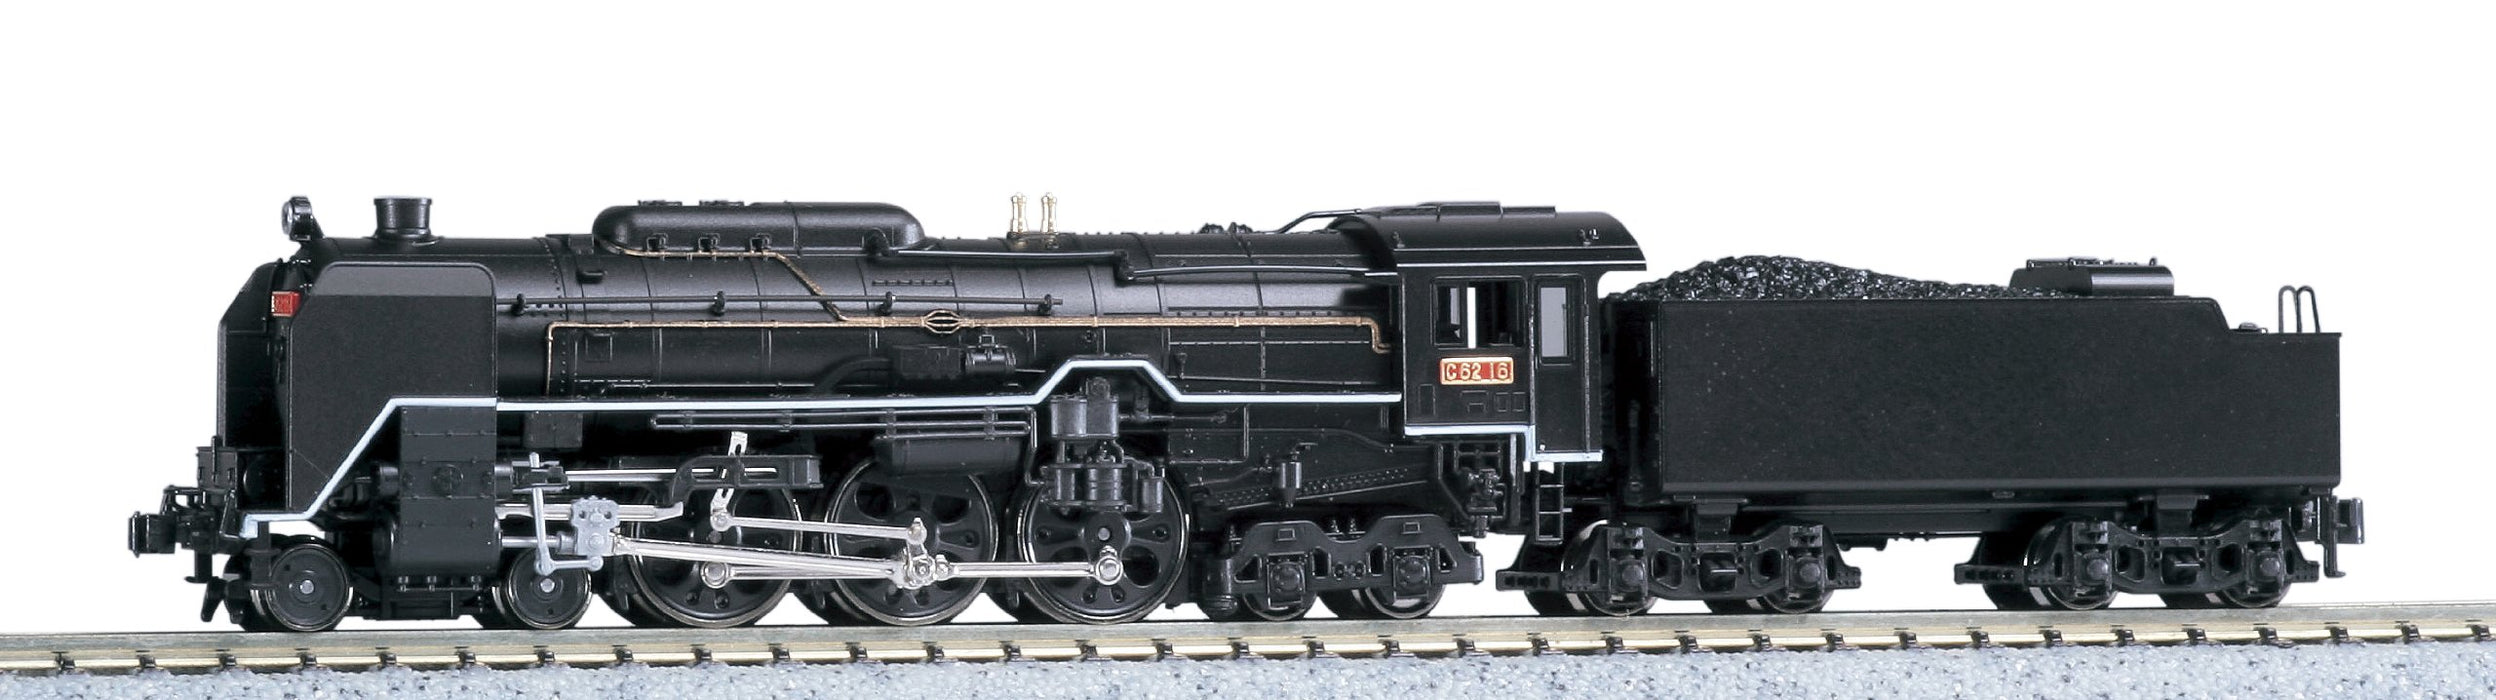 Kato Spur N 2019-2 C62 Tokaido Dampflokomotive Eisenbahnmodell